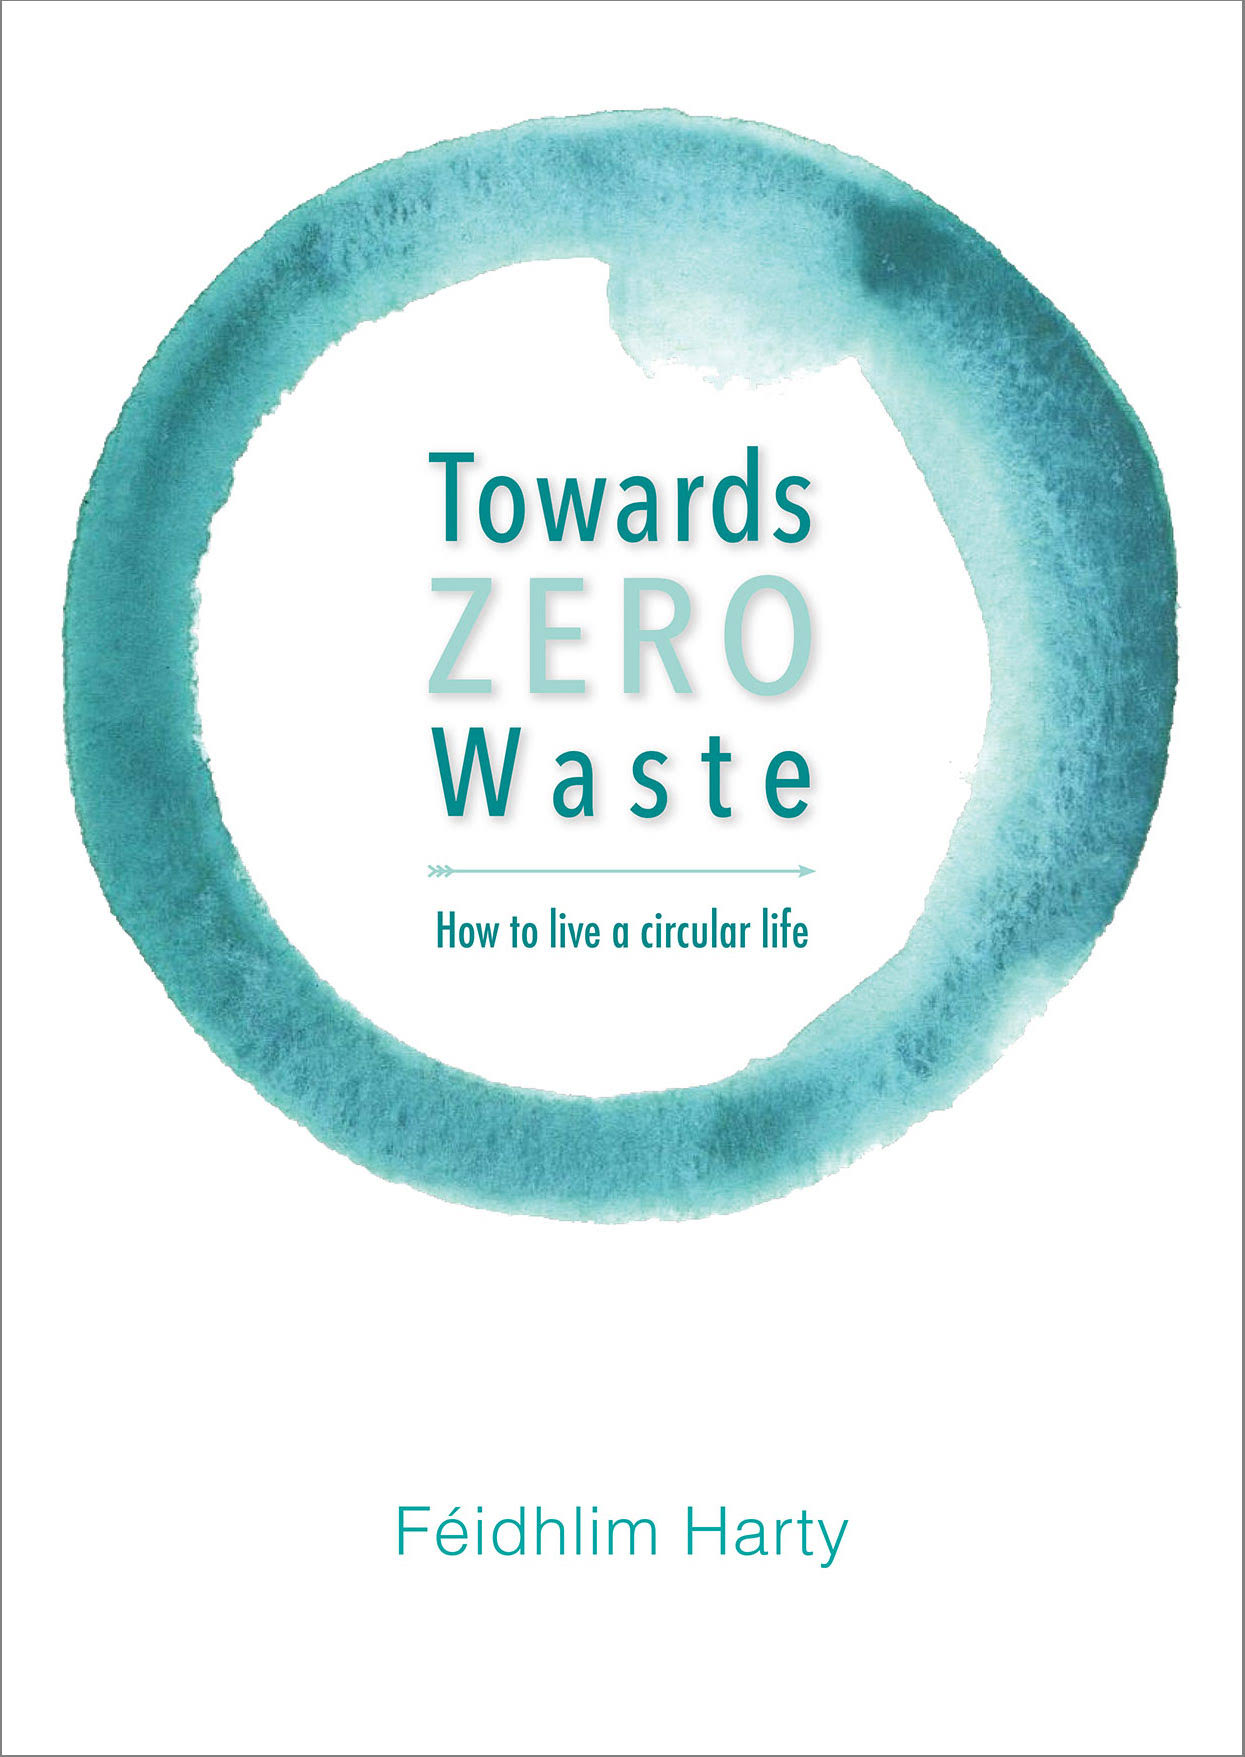 Towards Zero Waste: How to Live a Circular Life [Book]